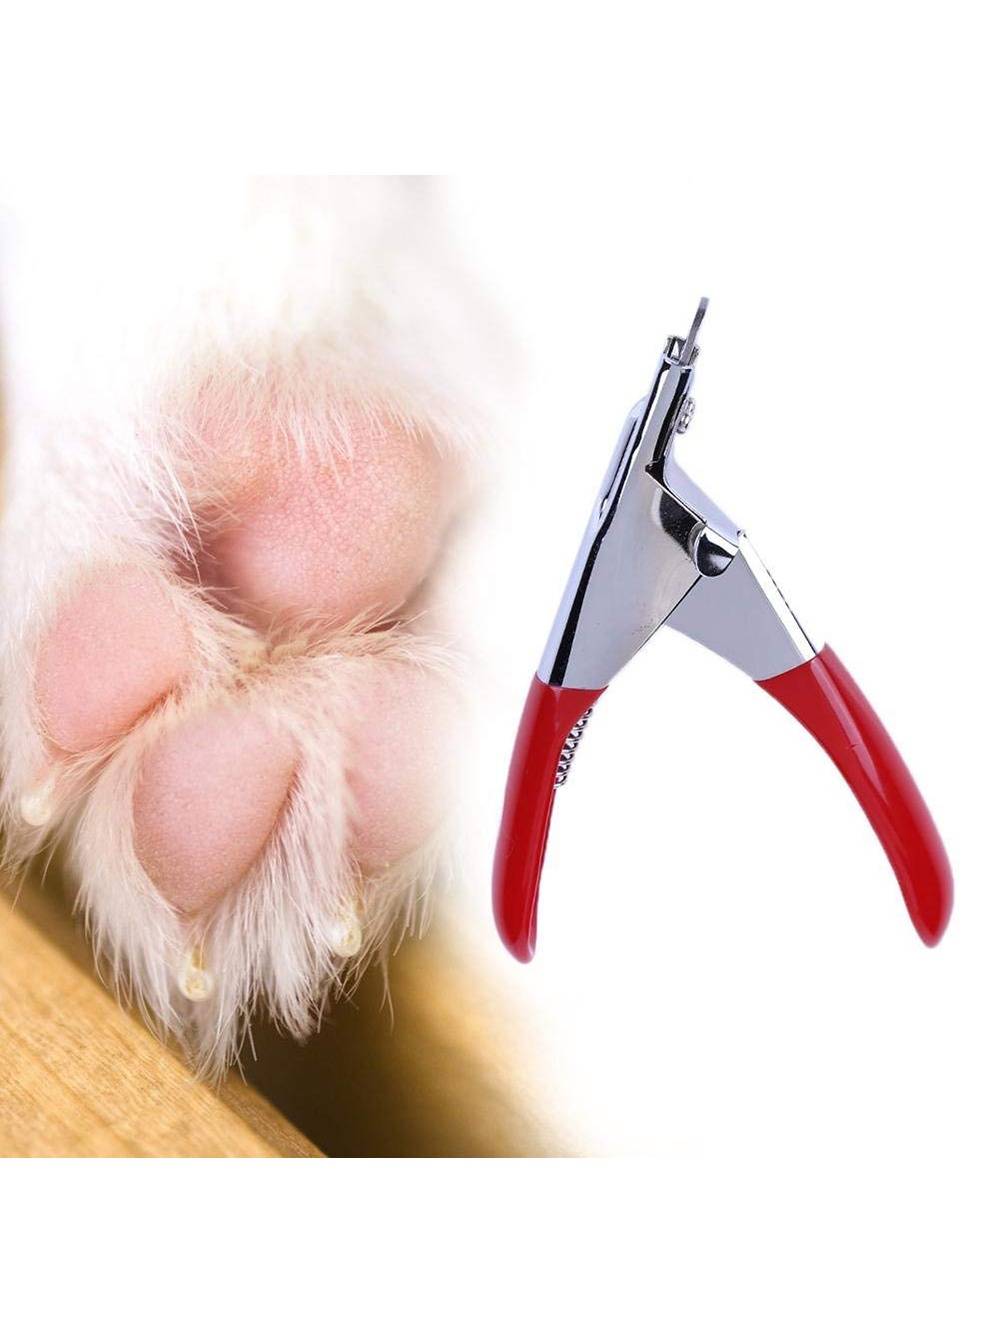 Как правильно подстричь когти собаке в домашних условиях